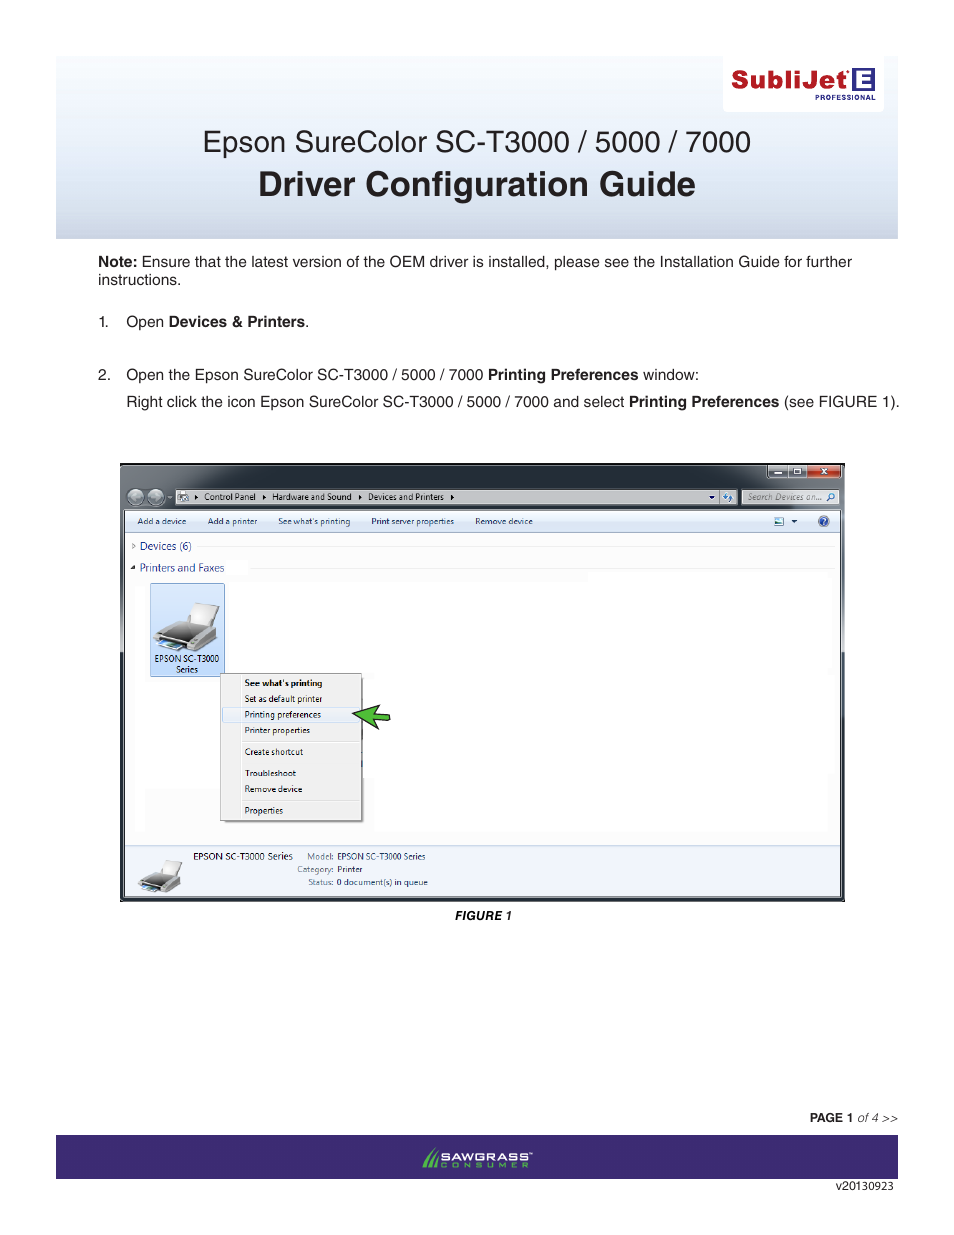 Xpres SubliJet E Epson SureColor T5000 (Windows ICC Profile Setup): Driver Configuration Guide User Manual | 4 pages